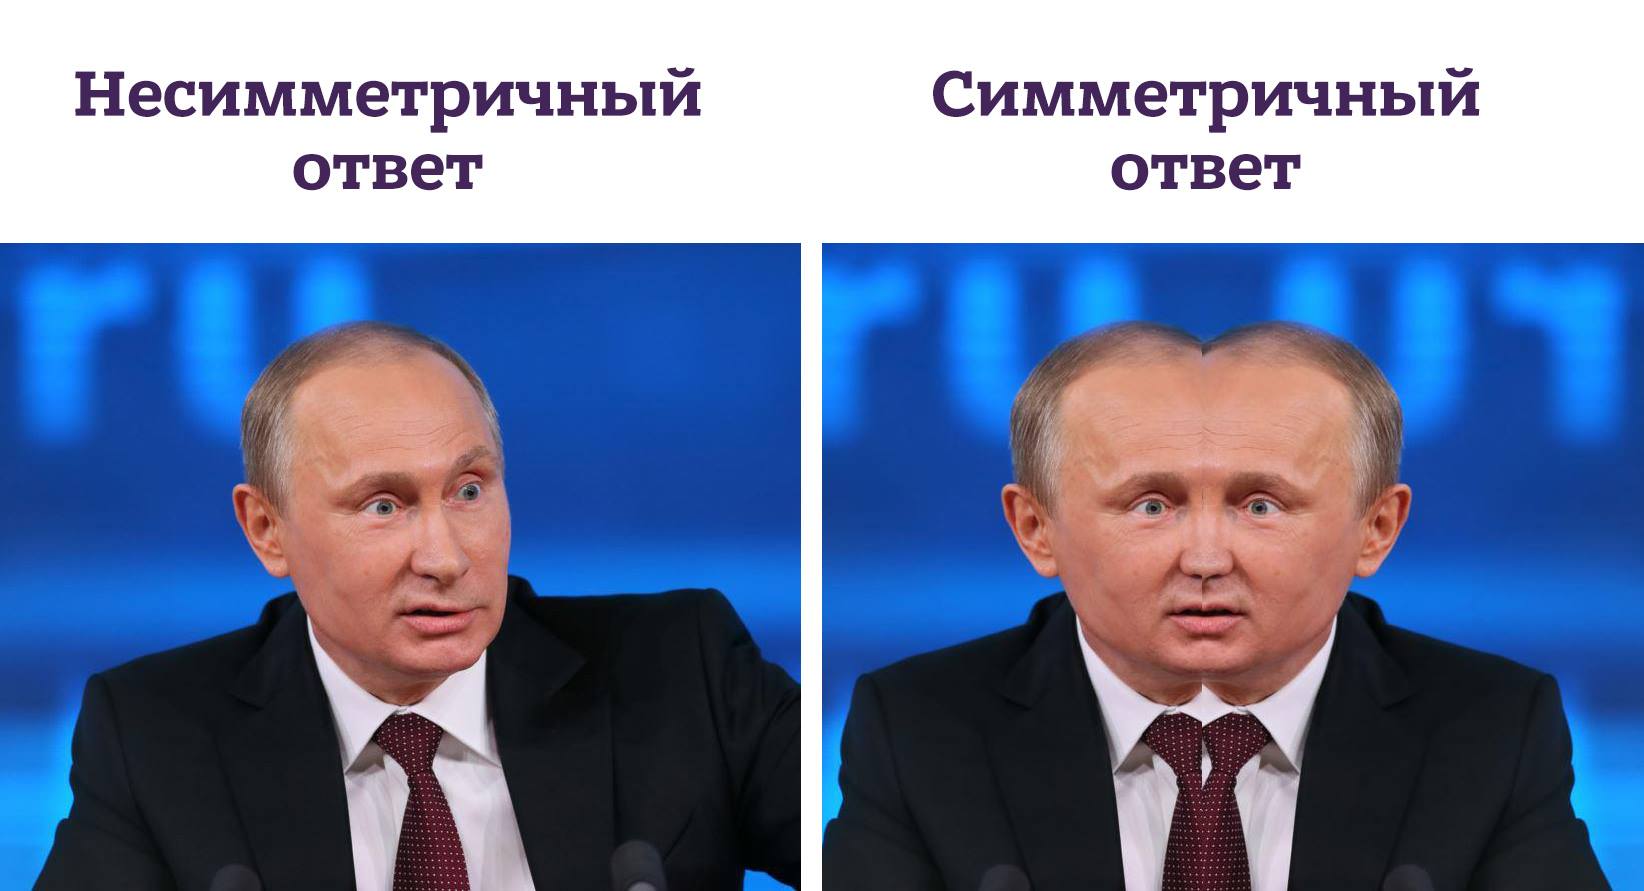 В России с юмором показали, как выглядит «несимметричный ответ» Путина. ФОТО